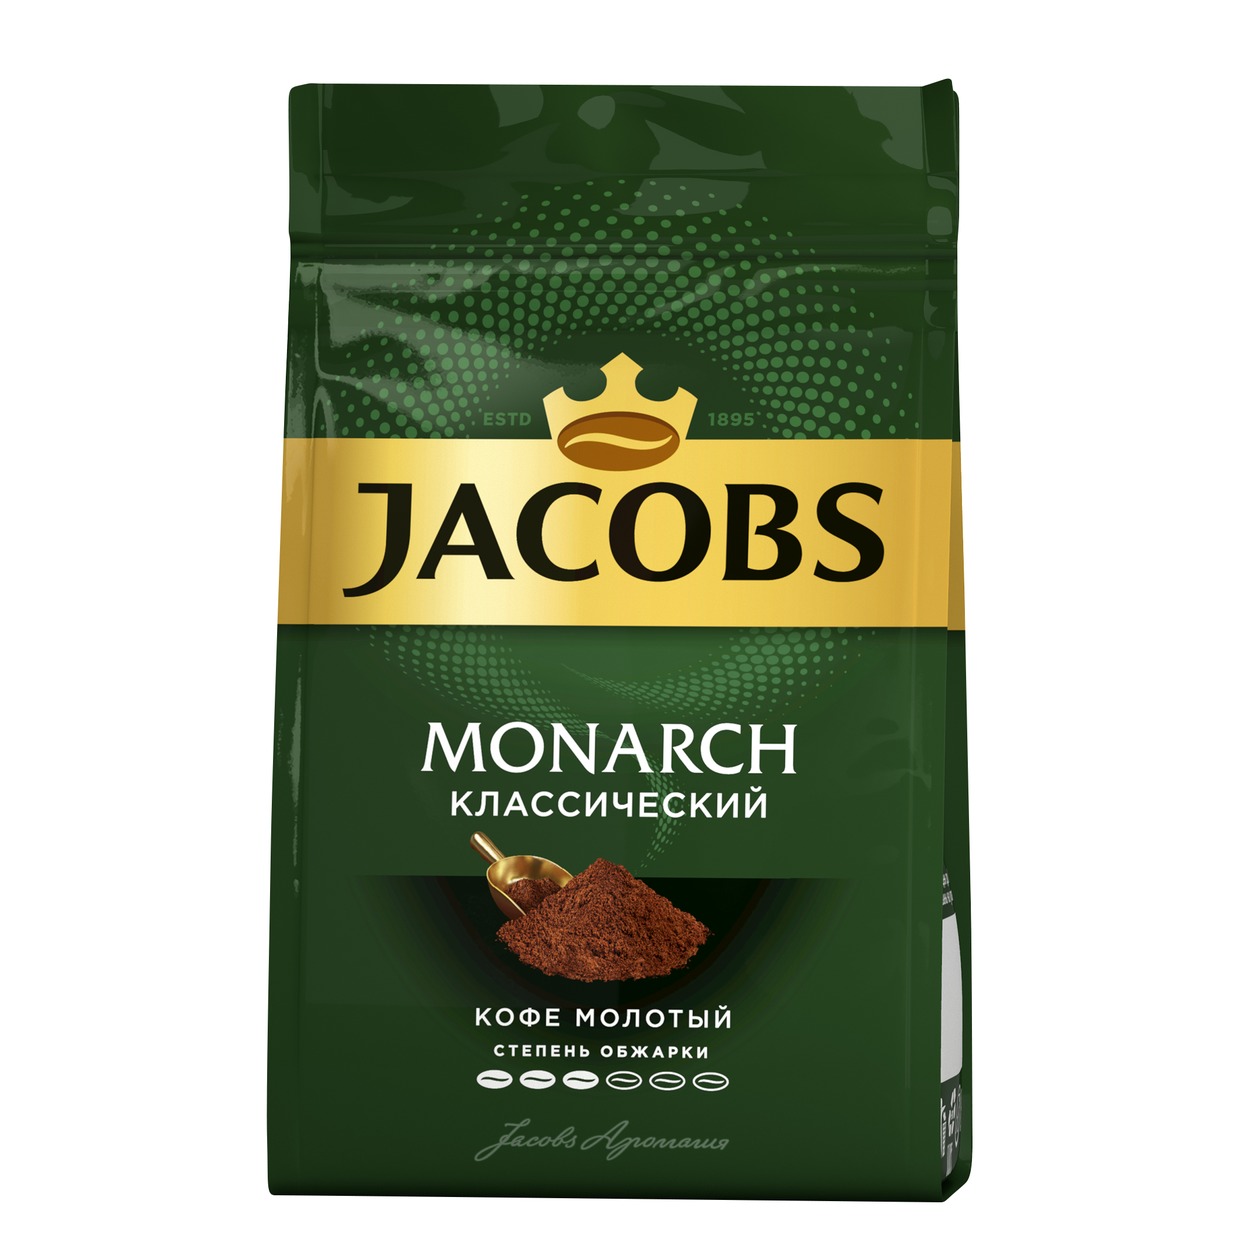 Кофе Jacobs Monarch, молотый, 70 г по акции в Пятерочке